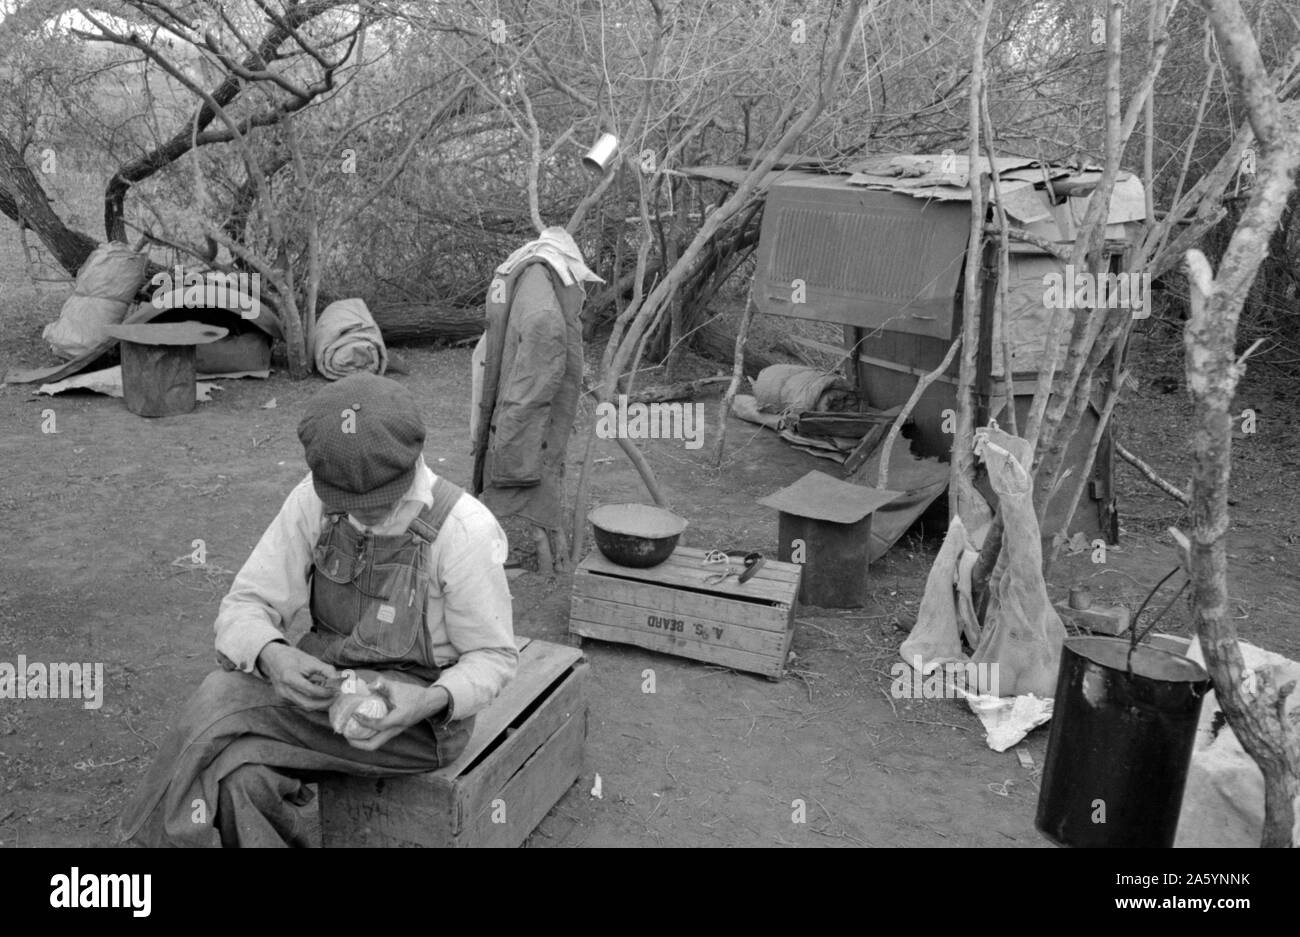 Weiße Wanderarbeiter leben in Lager mit zwei anderen Migranten Männer. Seine Schlafräume und allen weltlichen Besitz sind im Hintergrund zu sehen. Harlingen, Texas von Russell Lee, 1903-1986, Fotograf 19390101. Stockfoto